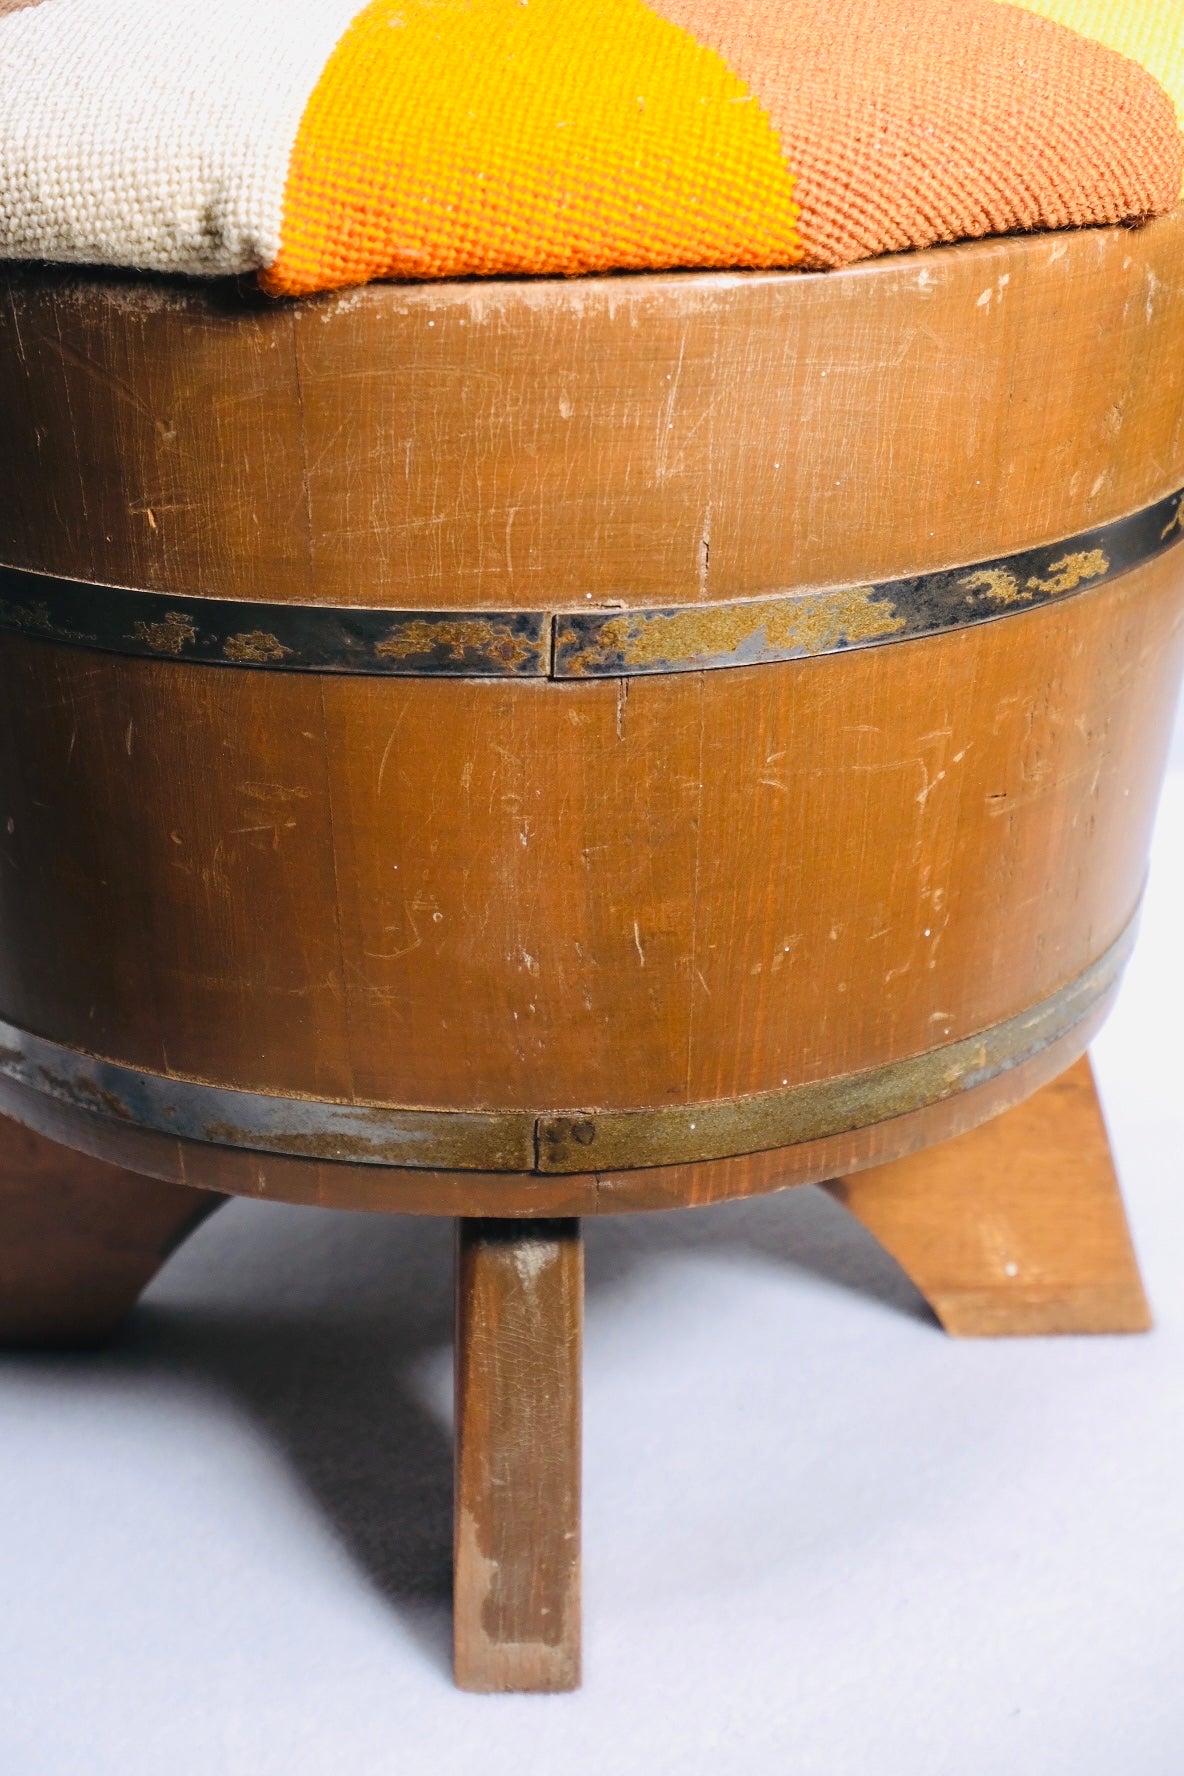 Keg Reupholstered Stool (Vintage)